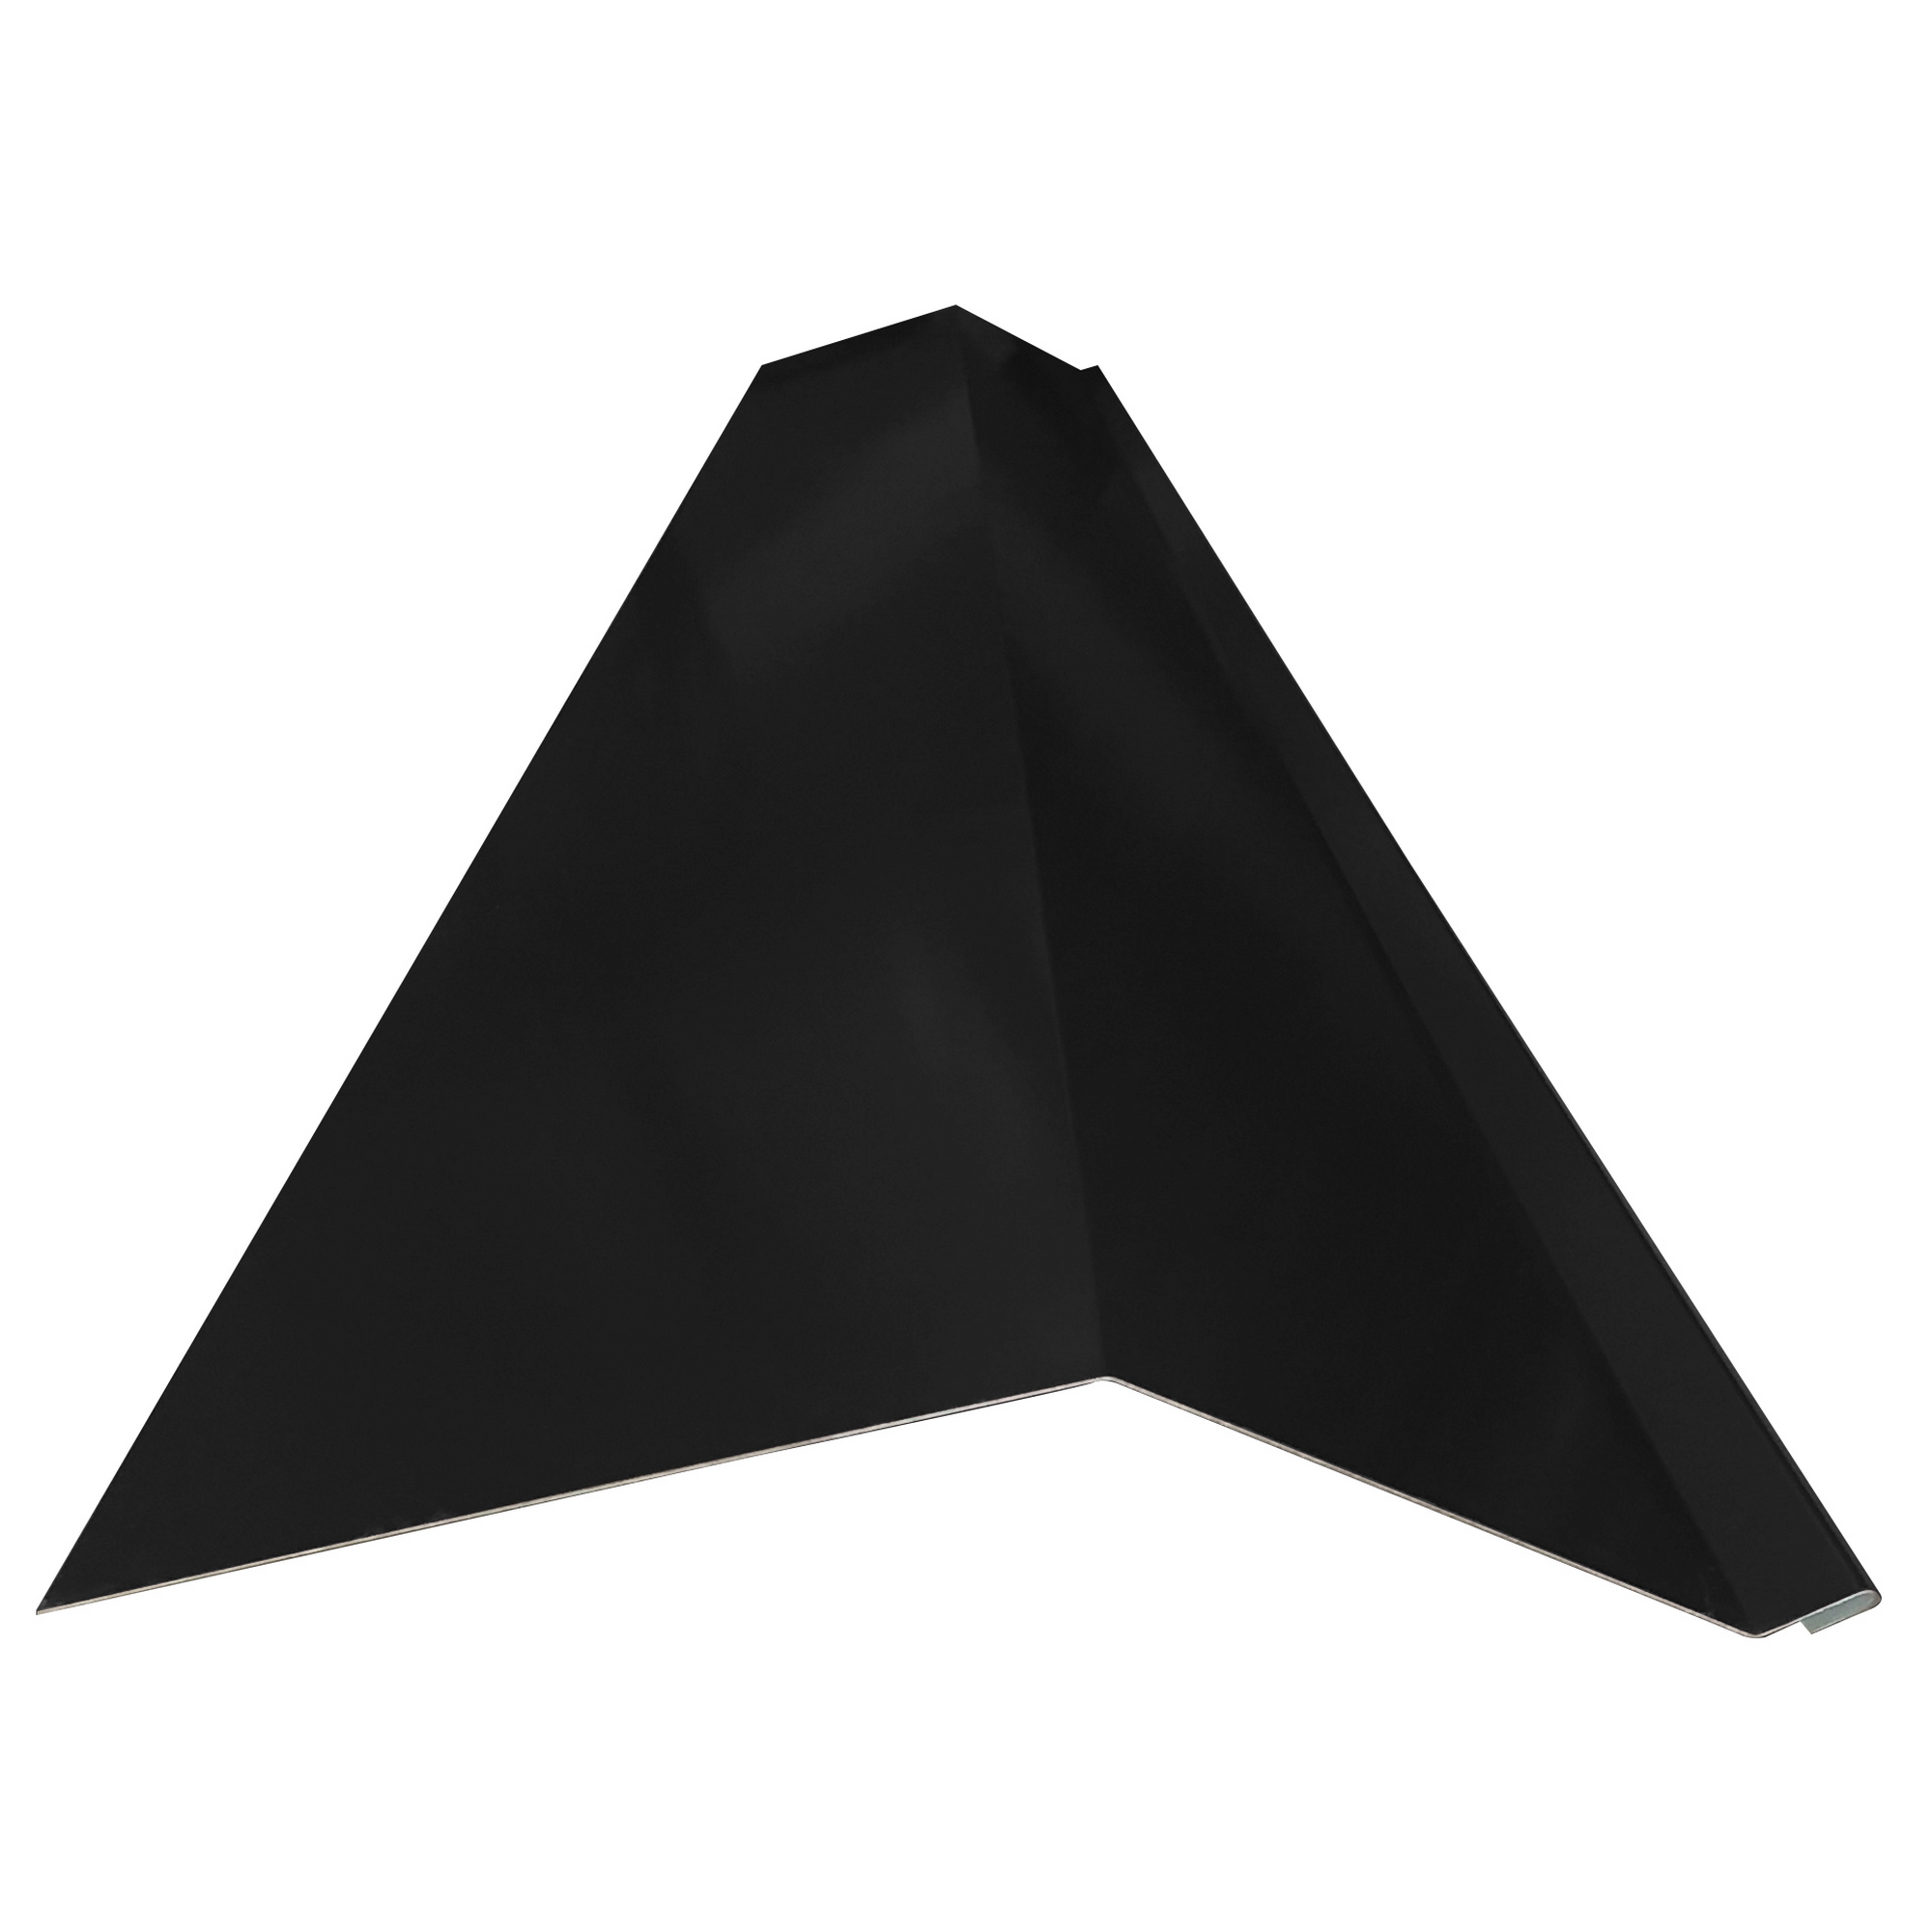 Schürze für Mansarden außen schwarz verzinkt 100 x 20,8 x 0,04 cm + product picture